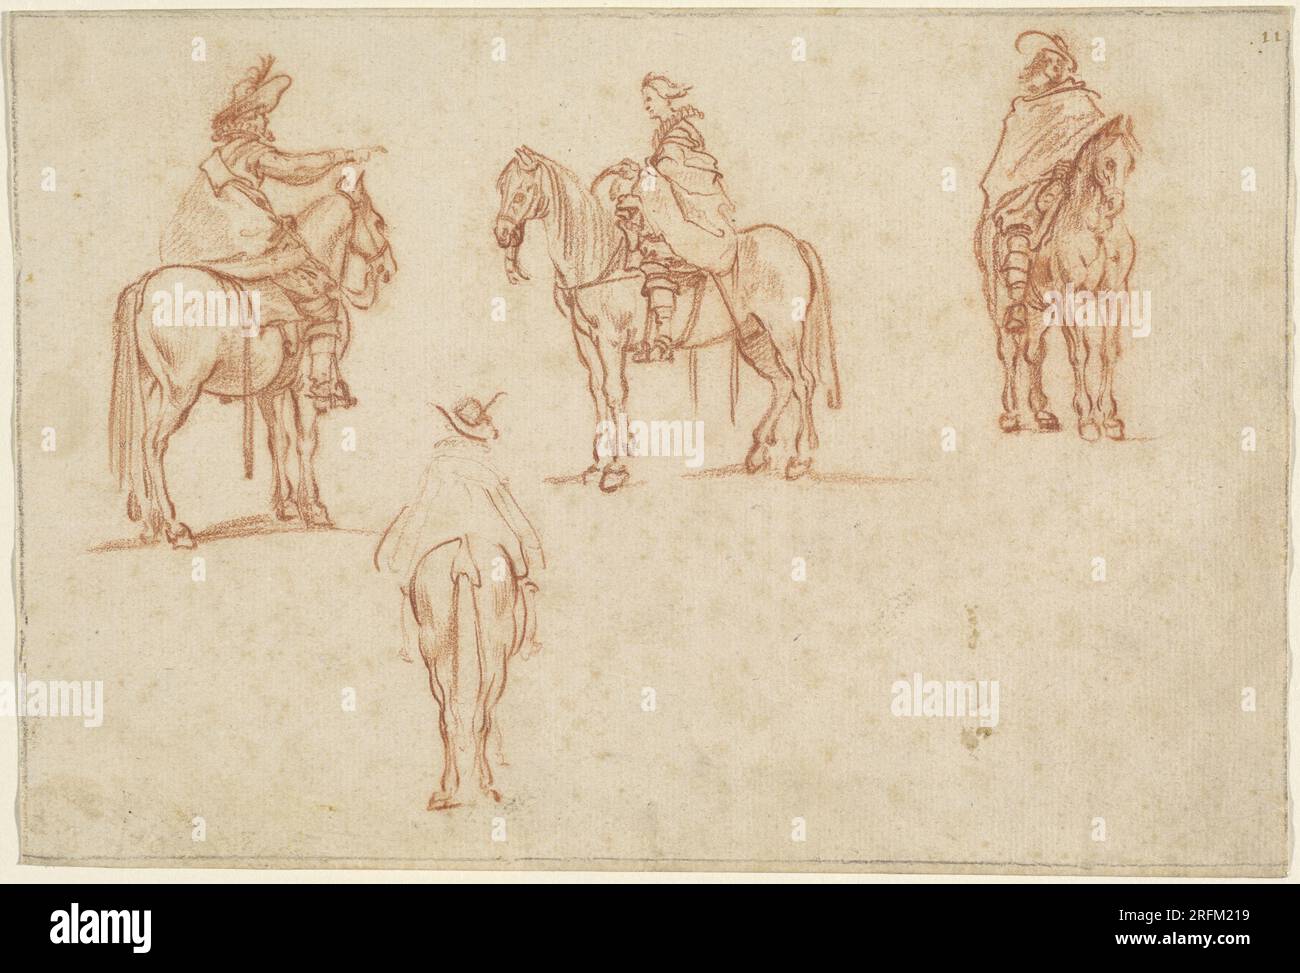 'Jacques Callot, étude de quatre cavaliers, 1628 ou avant, craie rouge sur papier couché, total : 17,3 x 25,5 cm (6 13/16 x 10 1/16 po), Collection Rosenwald, 1961.17.51' Banque D'Images